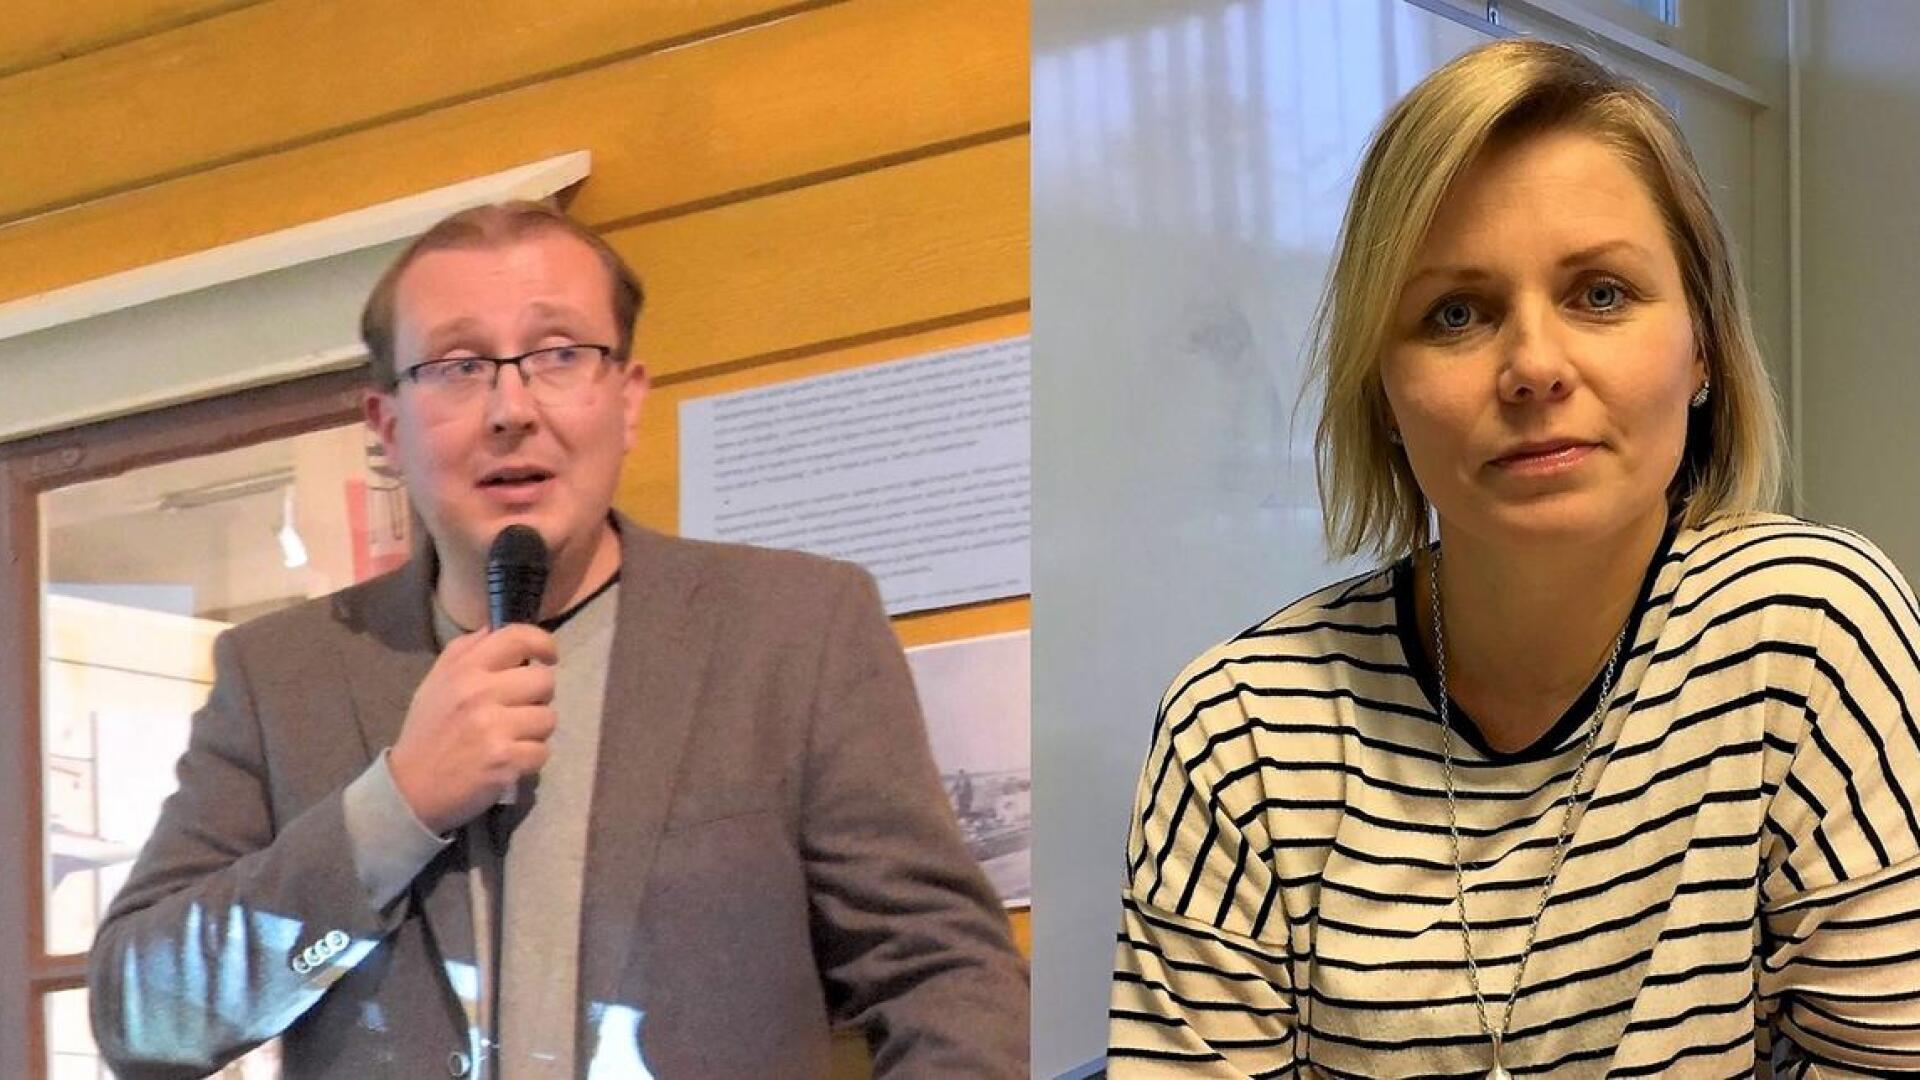 Viestintäsuunnittelija Antti Koivukangas ja projektipäällikkö Heidi Matinlassi ovat mukana RKP:n listalla.